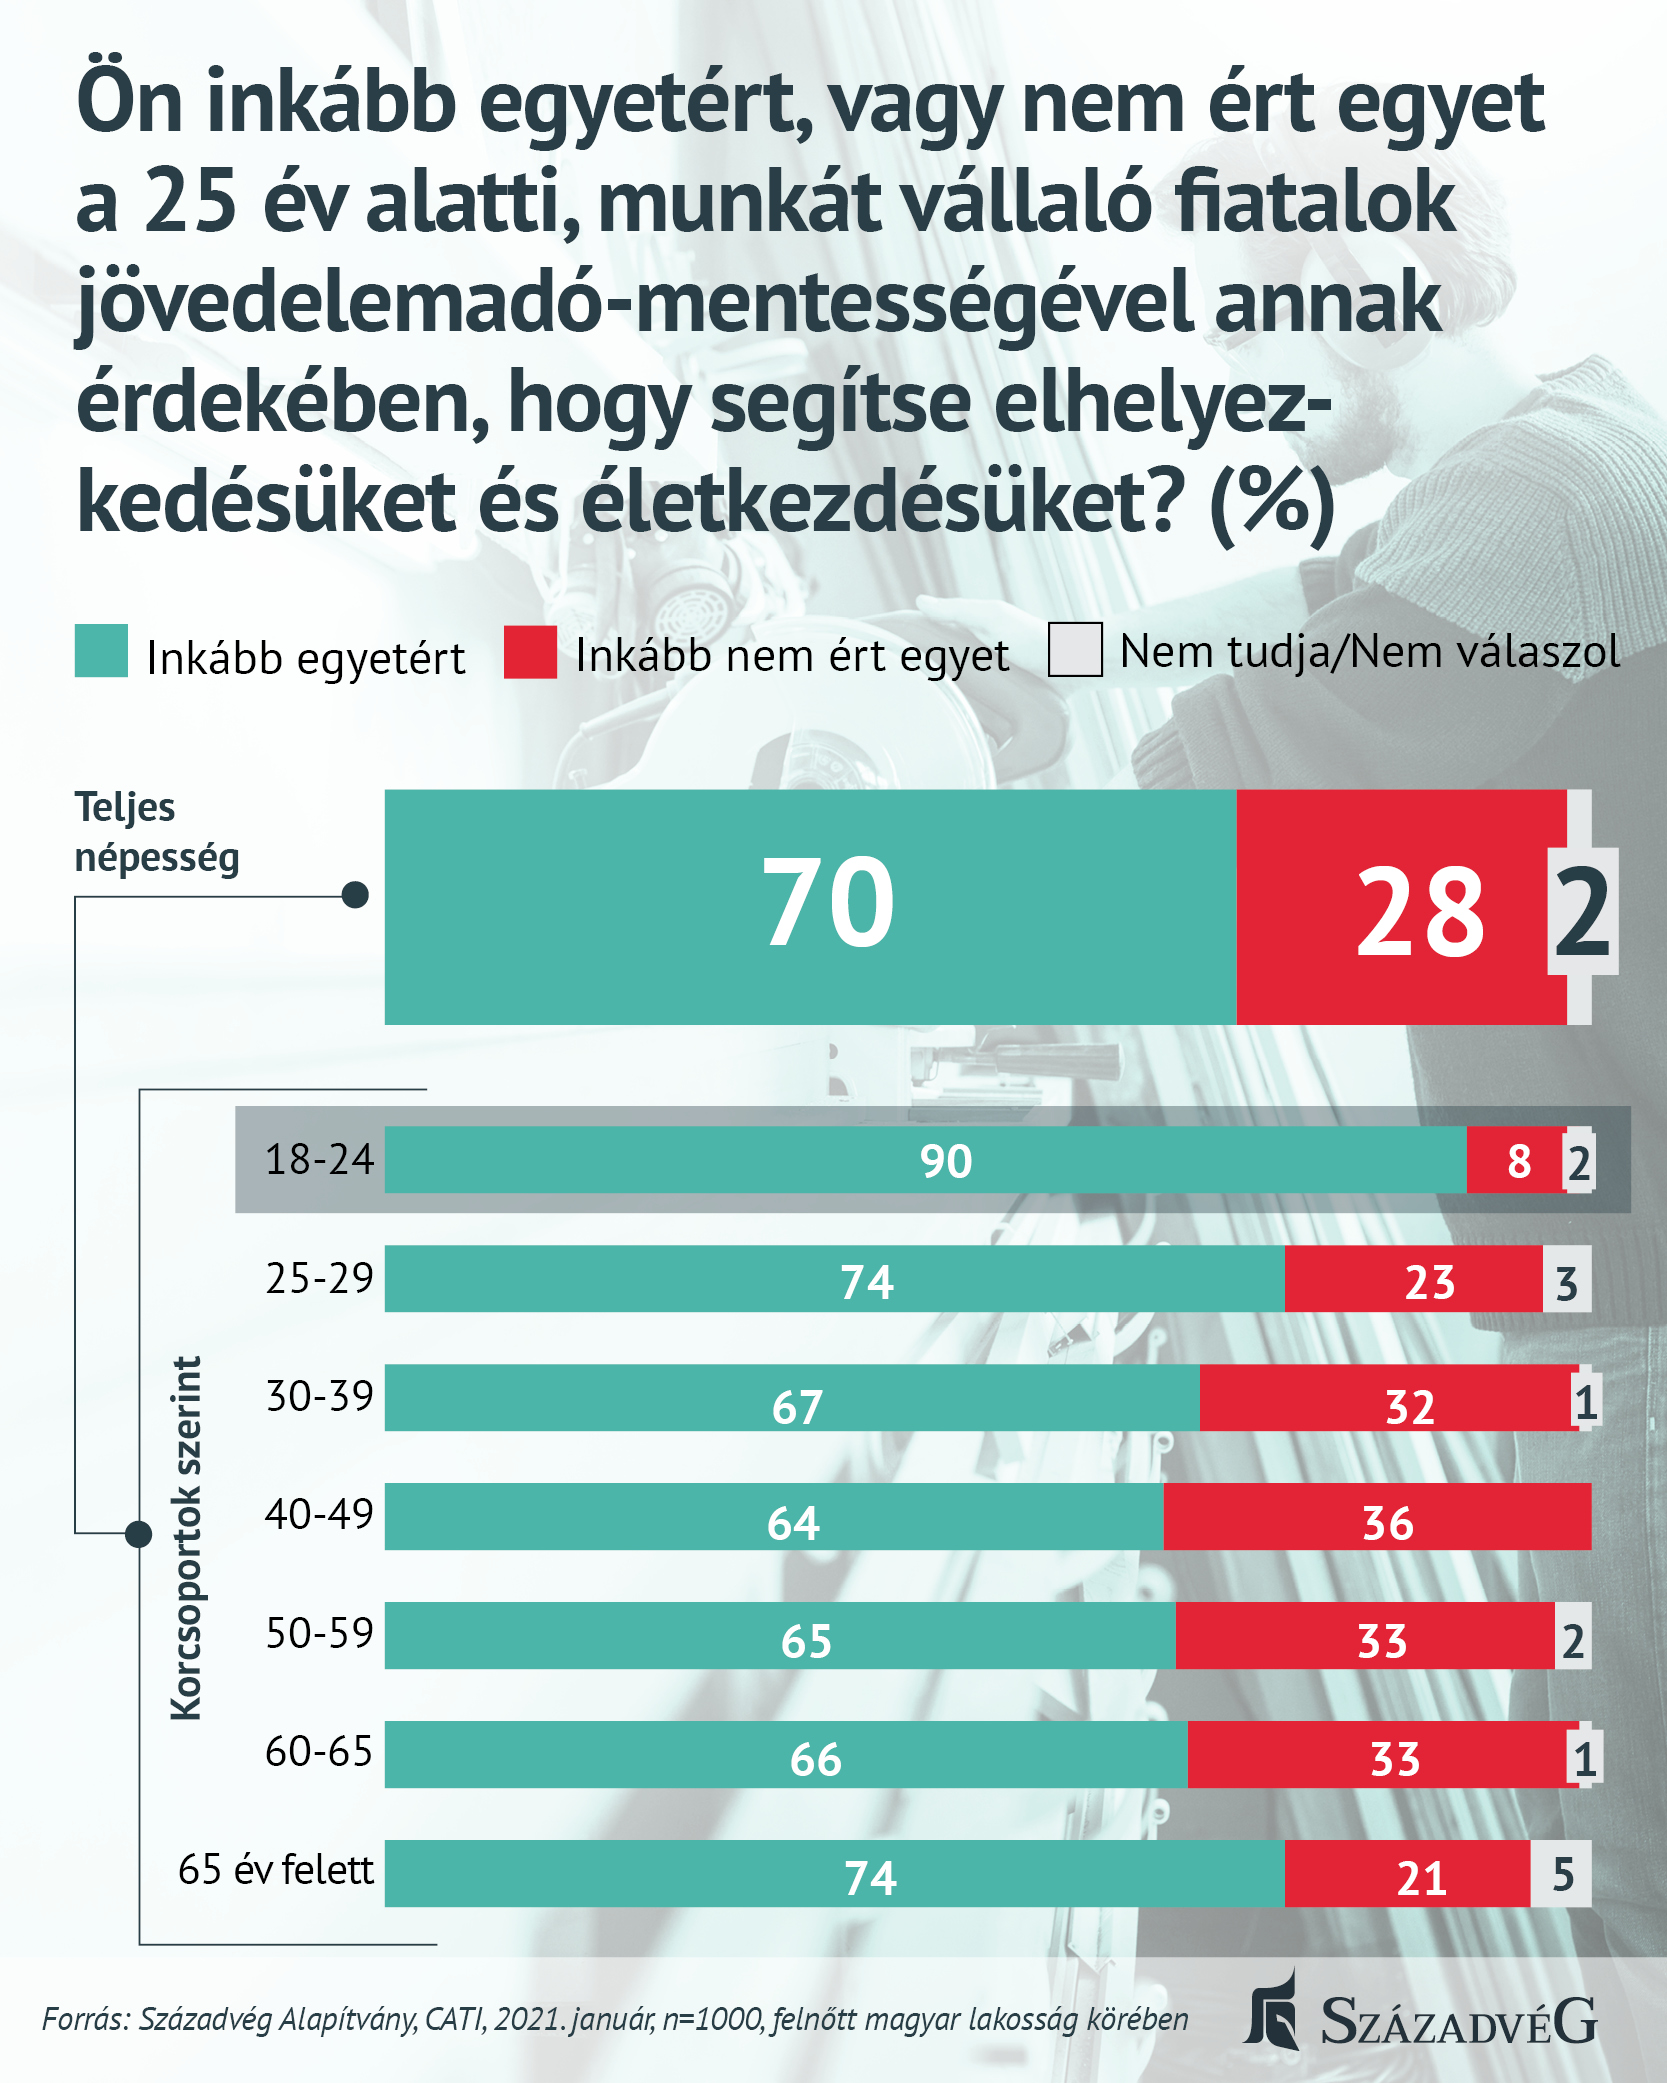 A magyarok jelentős többsége támogatja a fiatalok jövedelemadó-mentességét